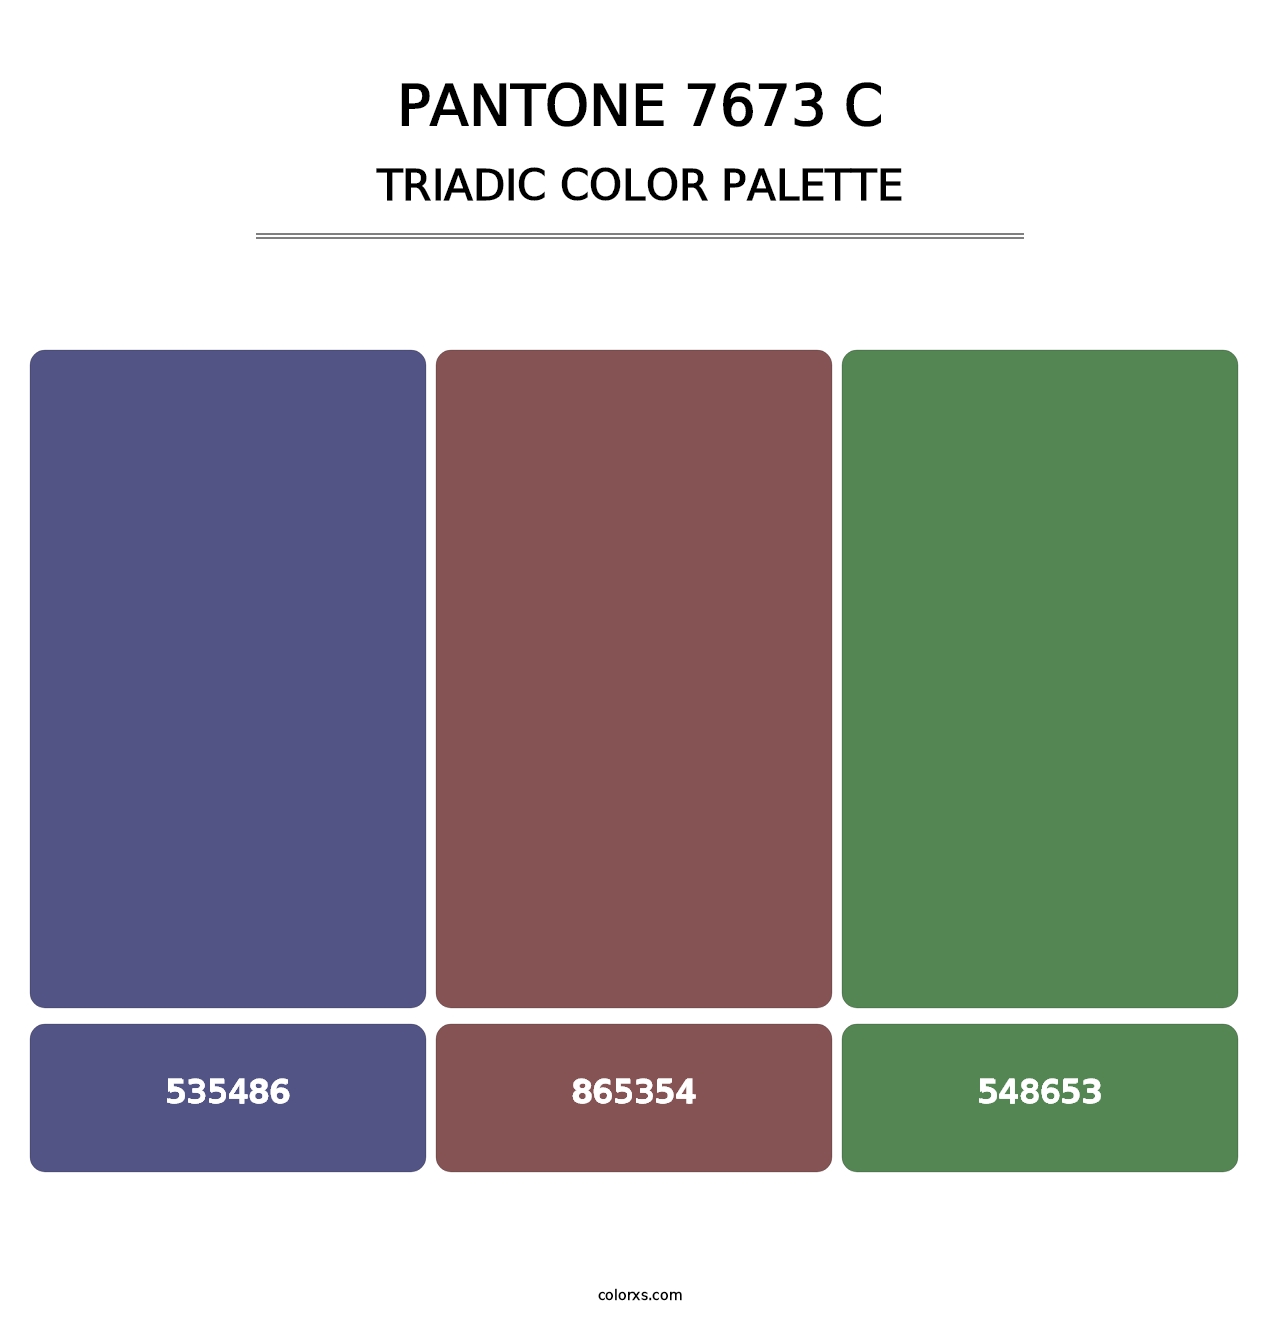 PANTONE 7673 C - Triadic Color Palette